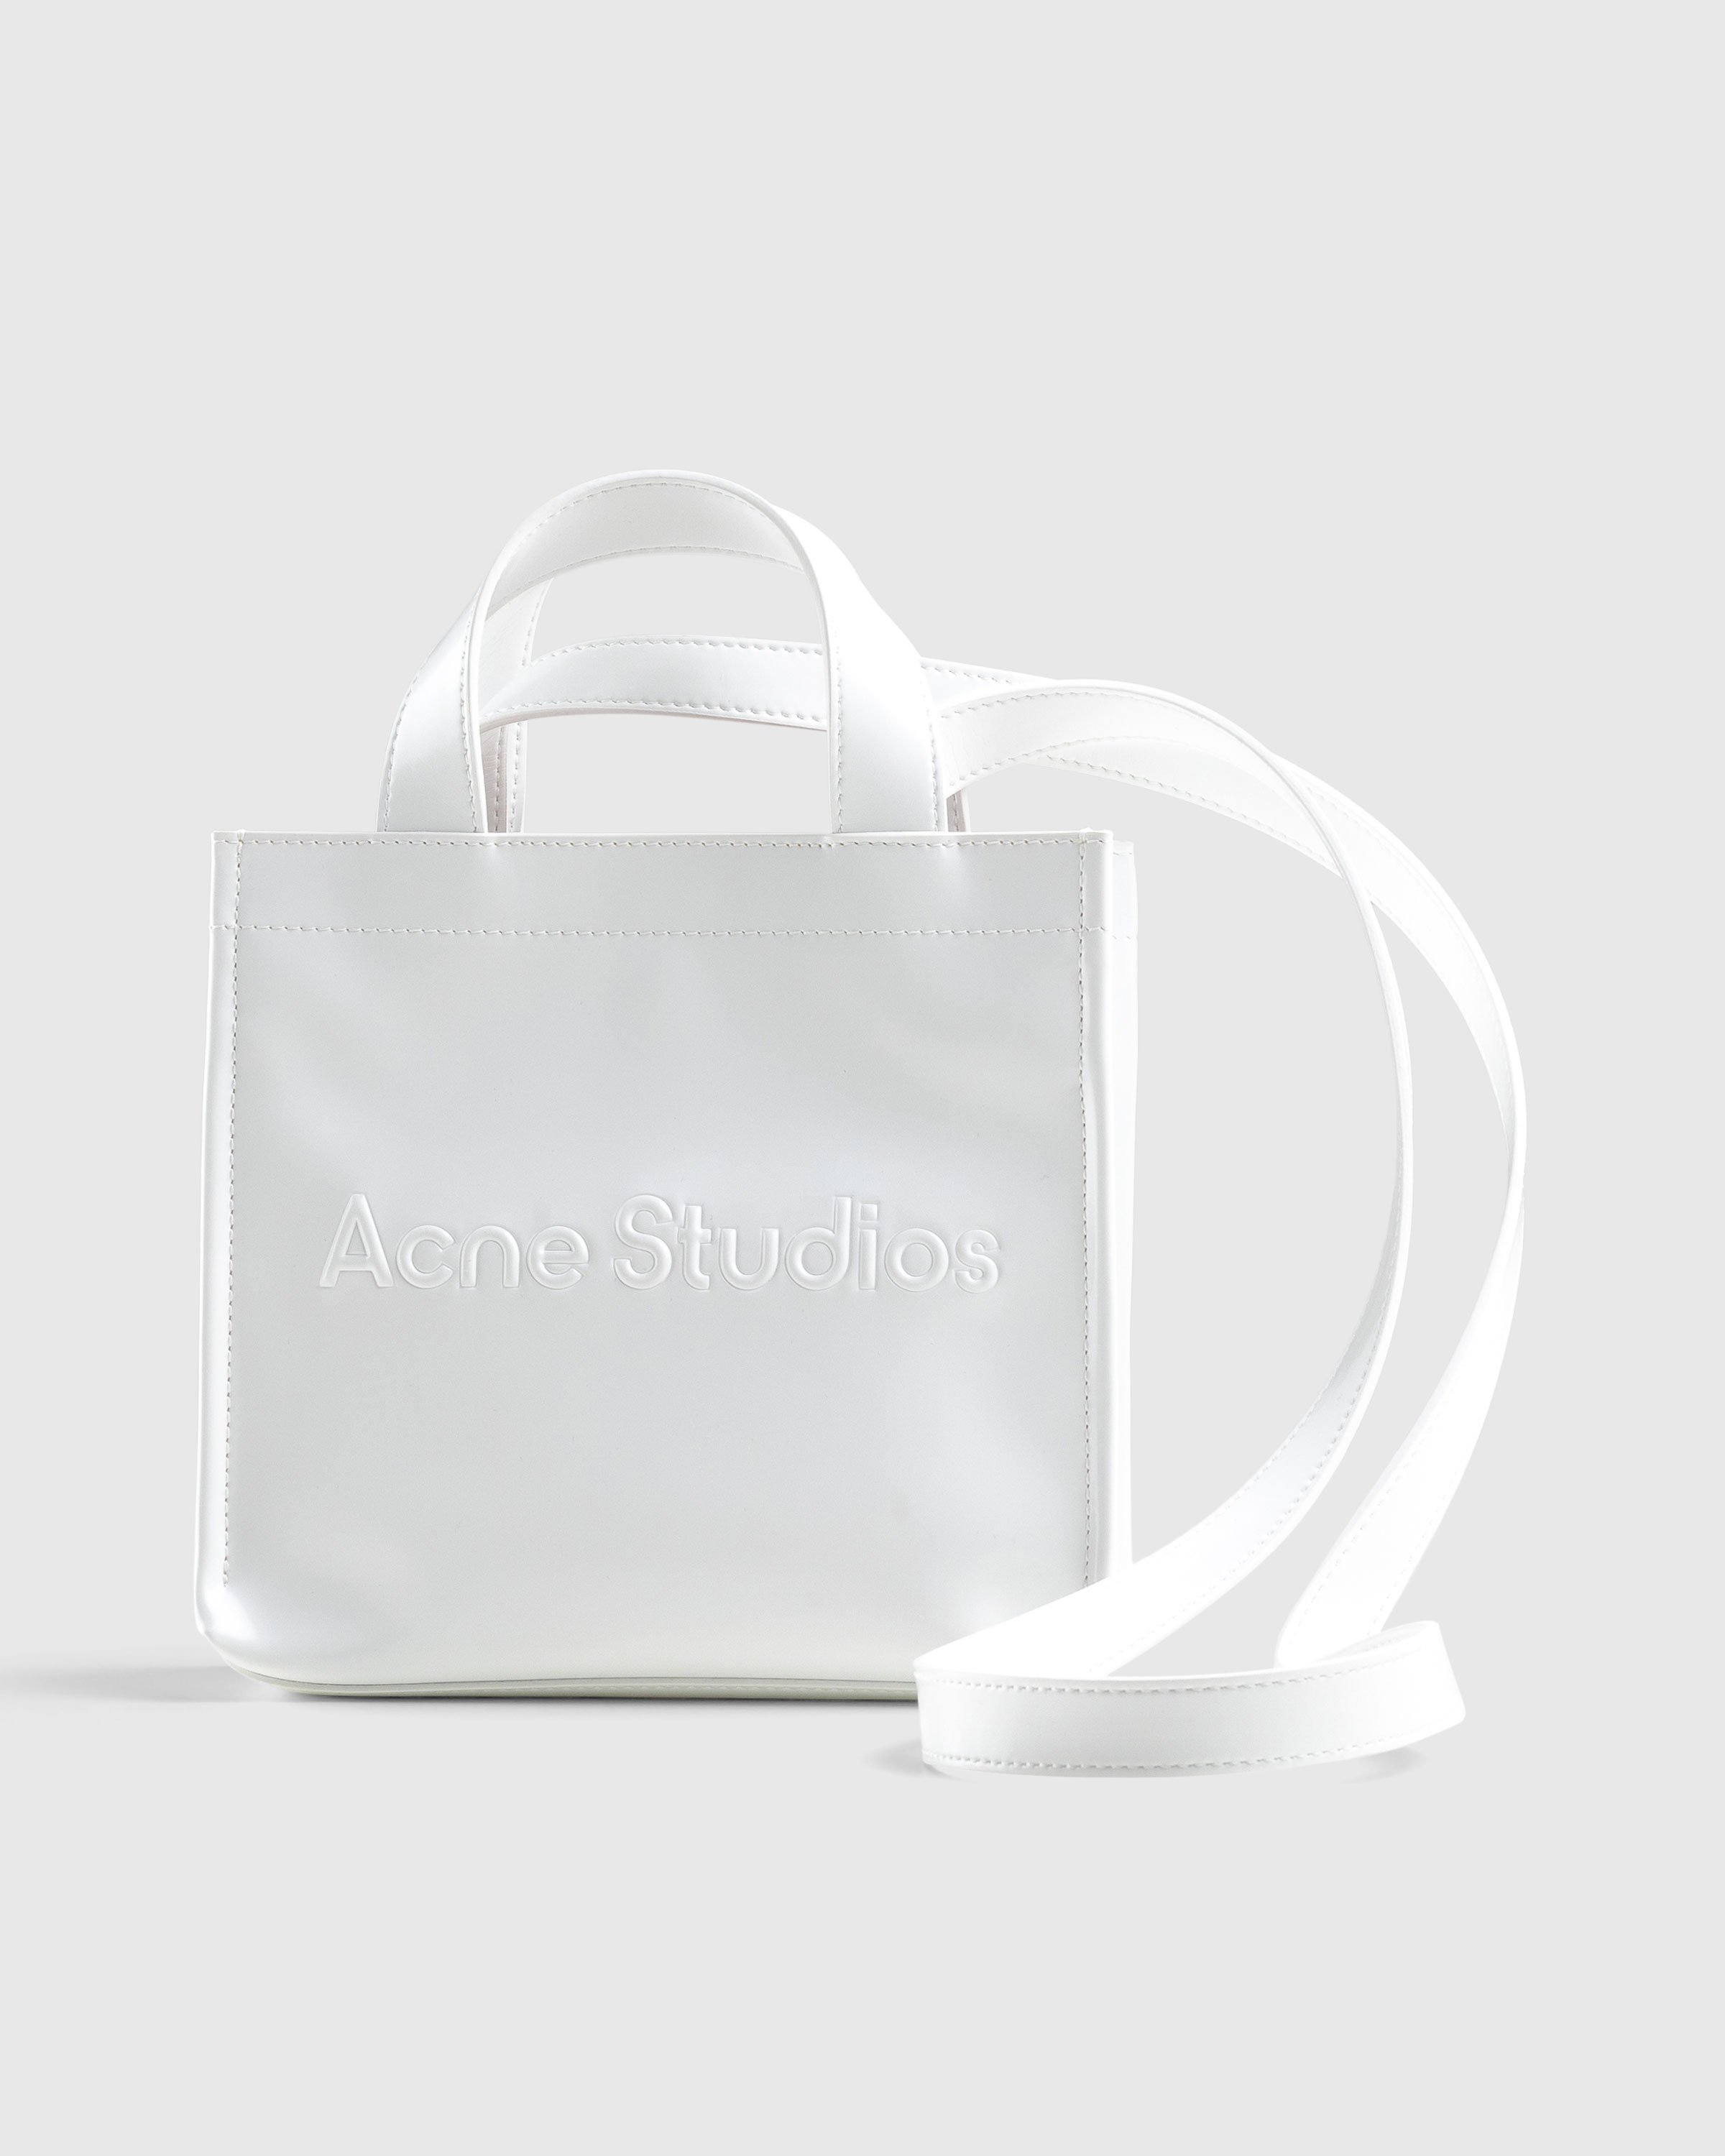 Acne Studios - Mini Logo Tote Bag White - Accessories - White - Image 3